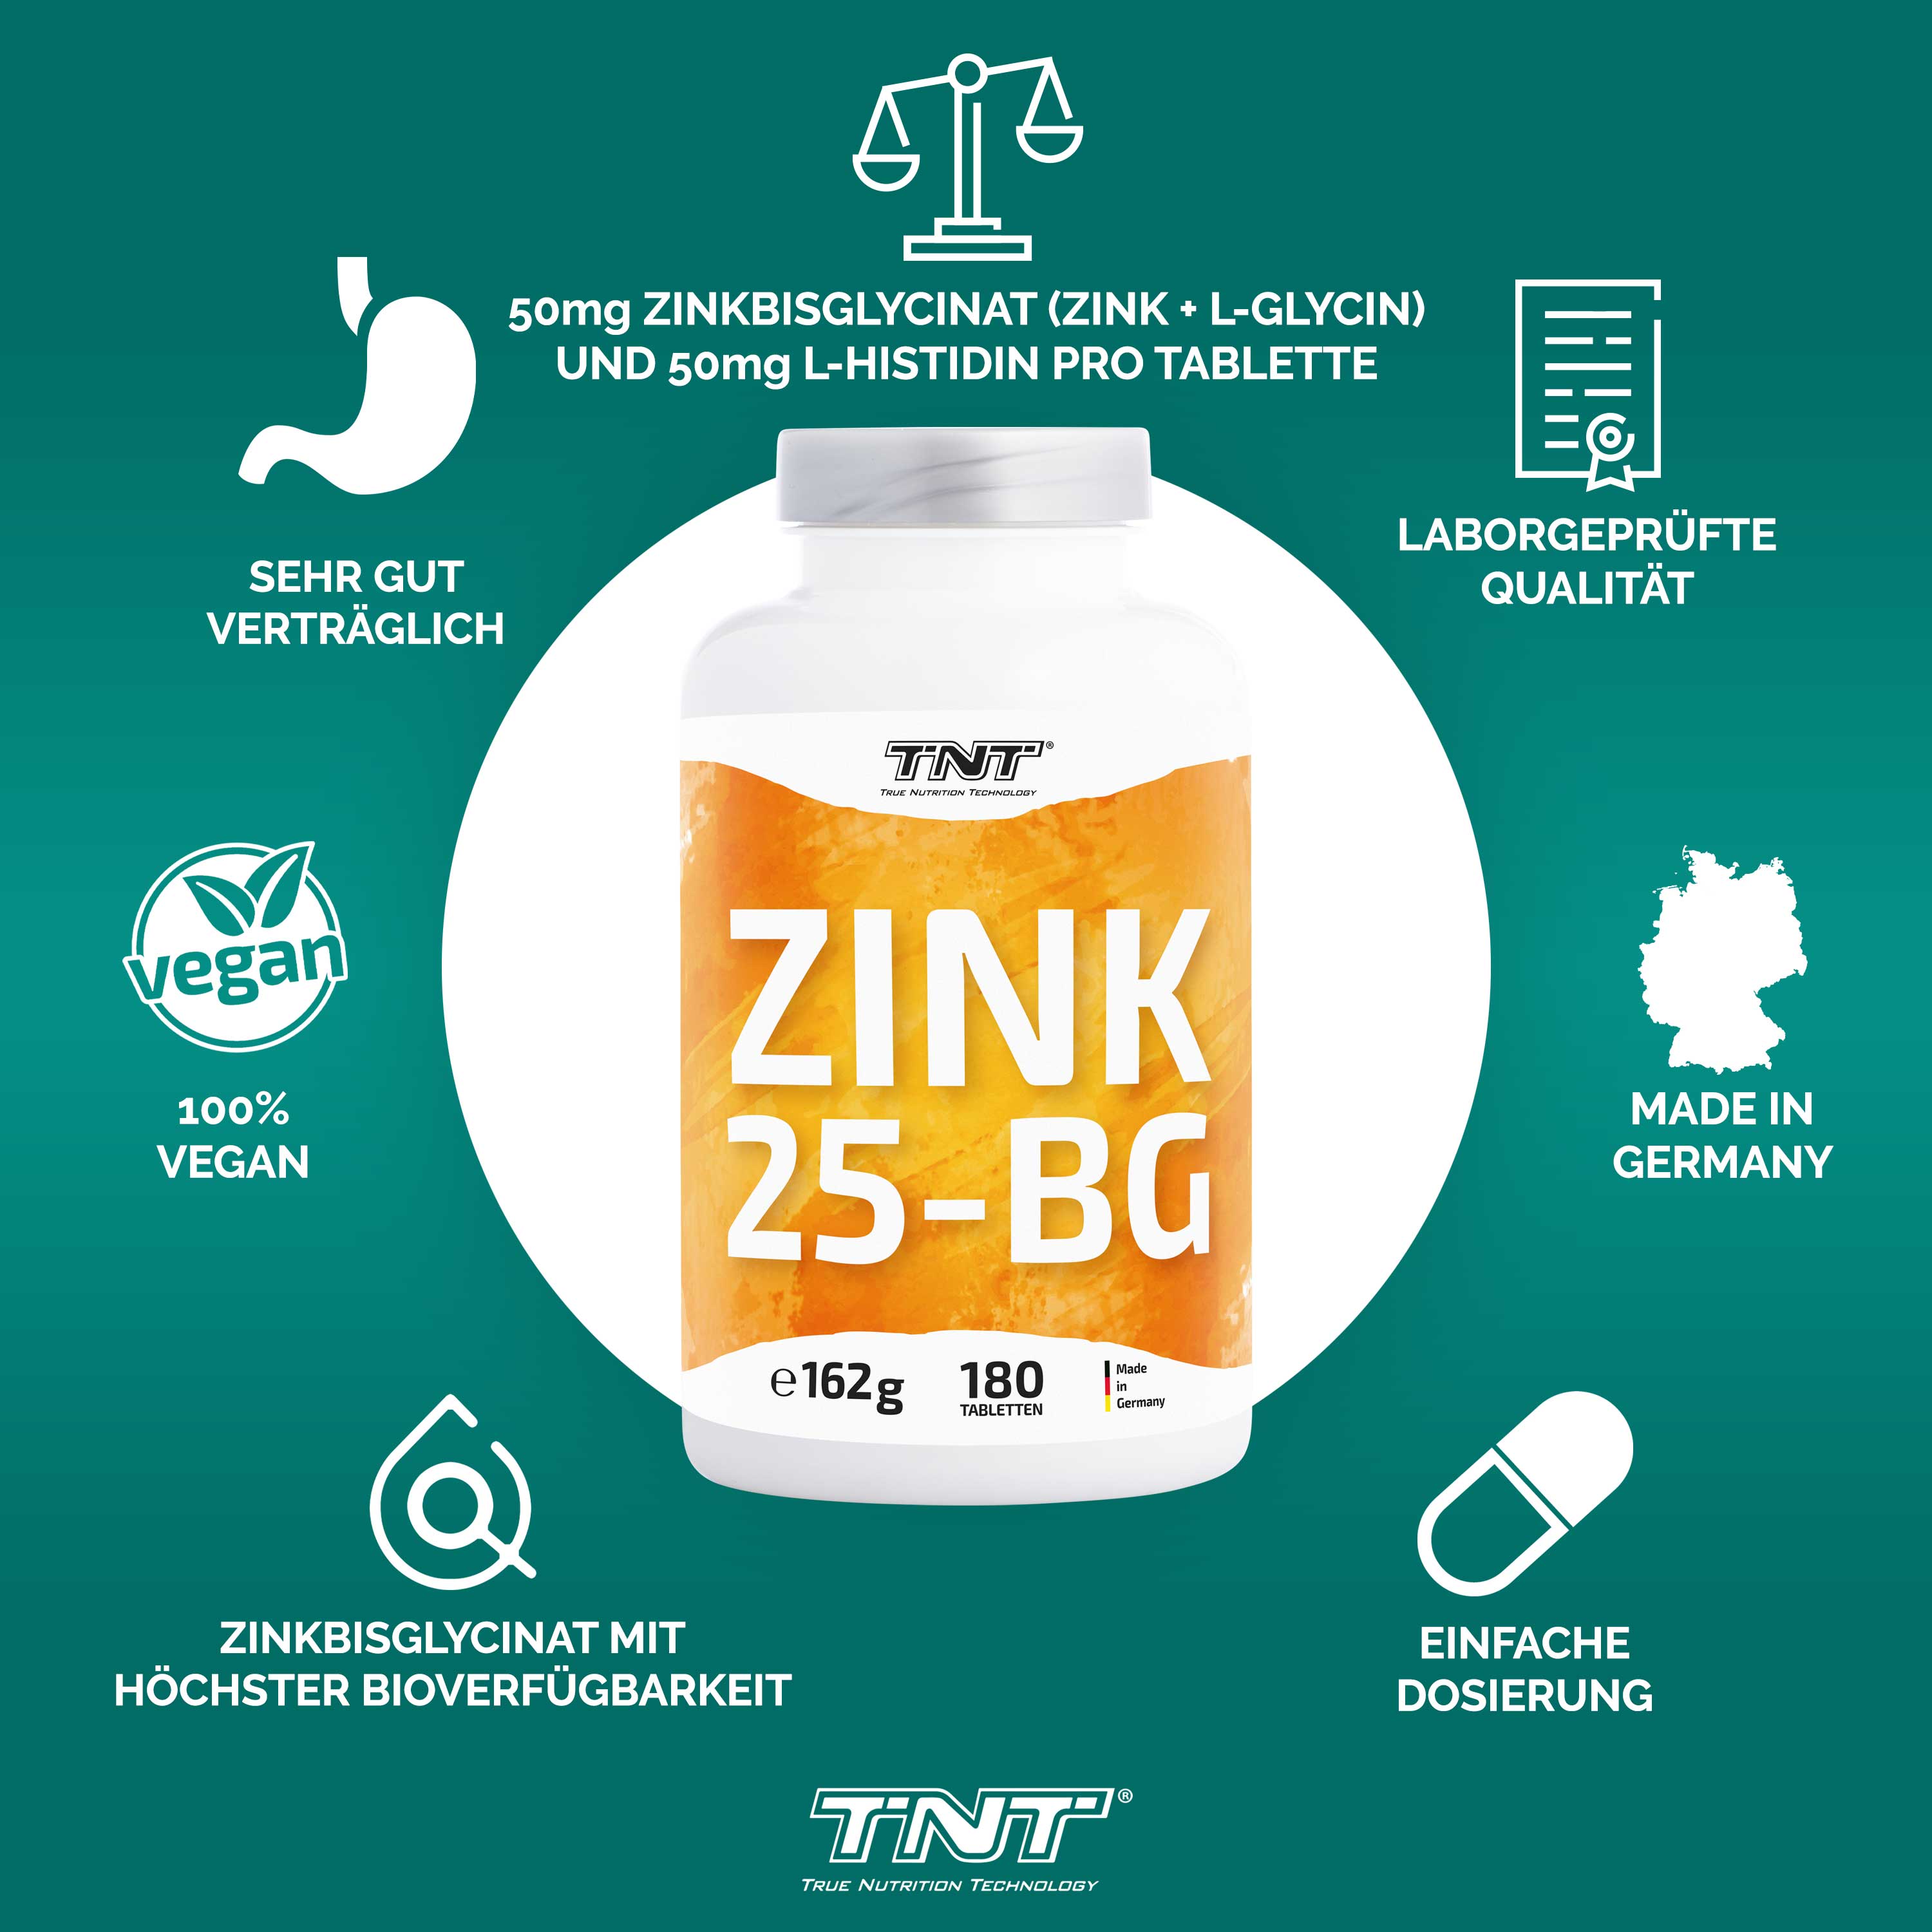 TNT Zink - Vorteile